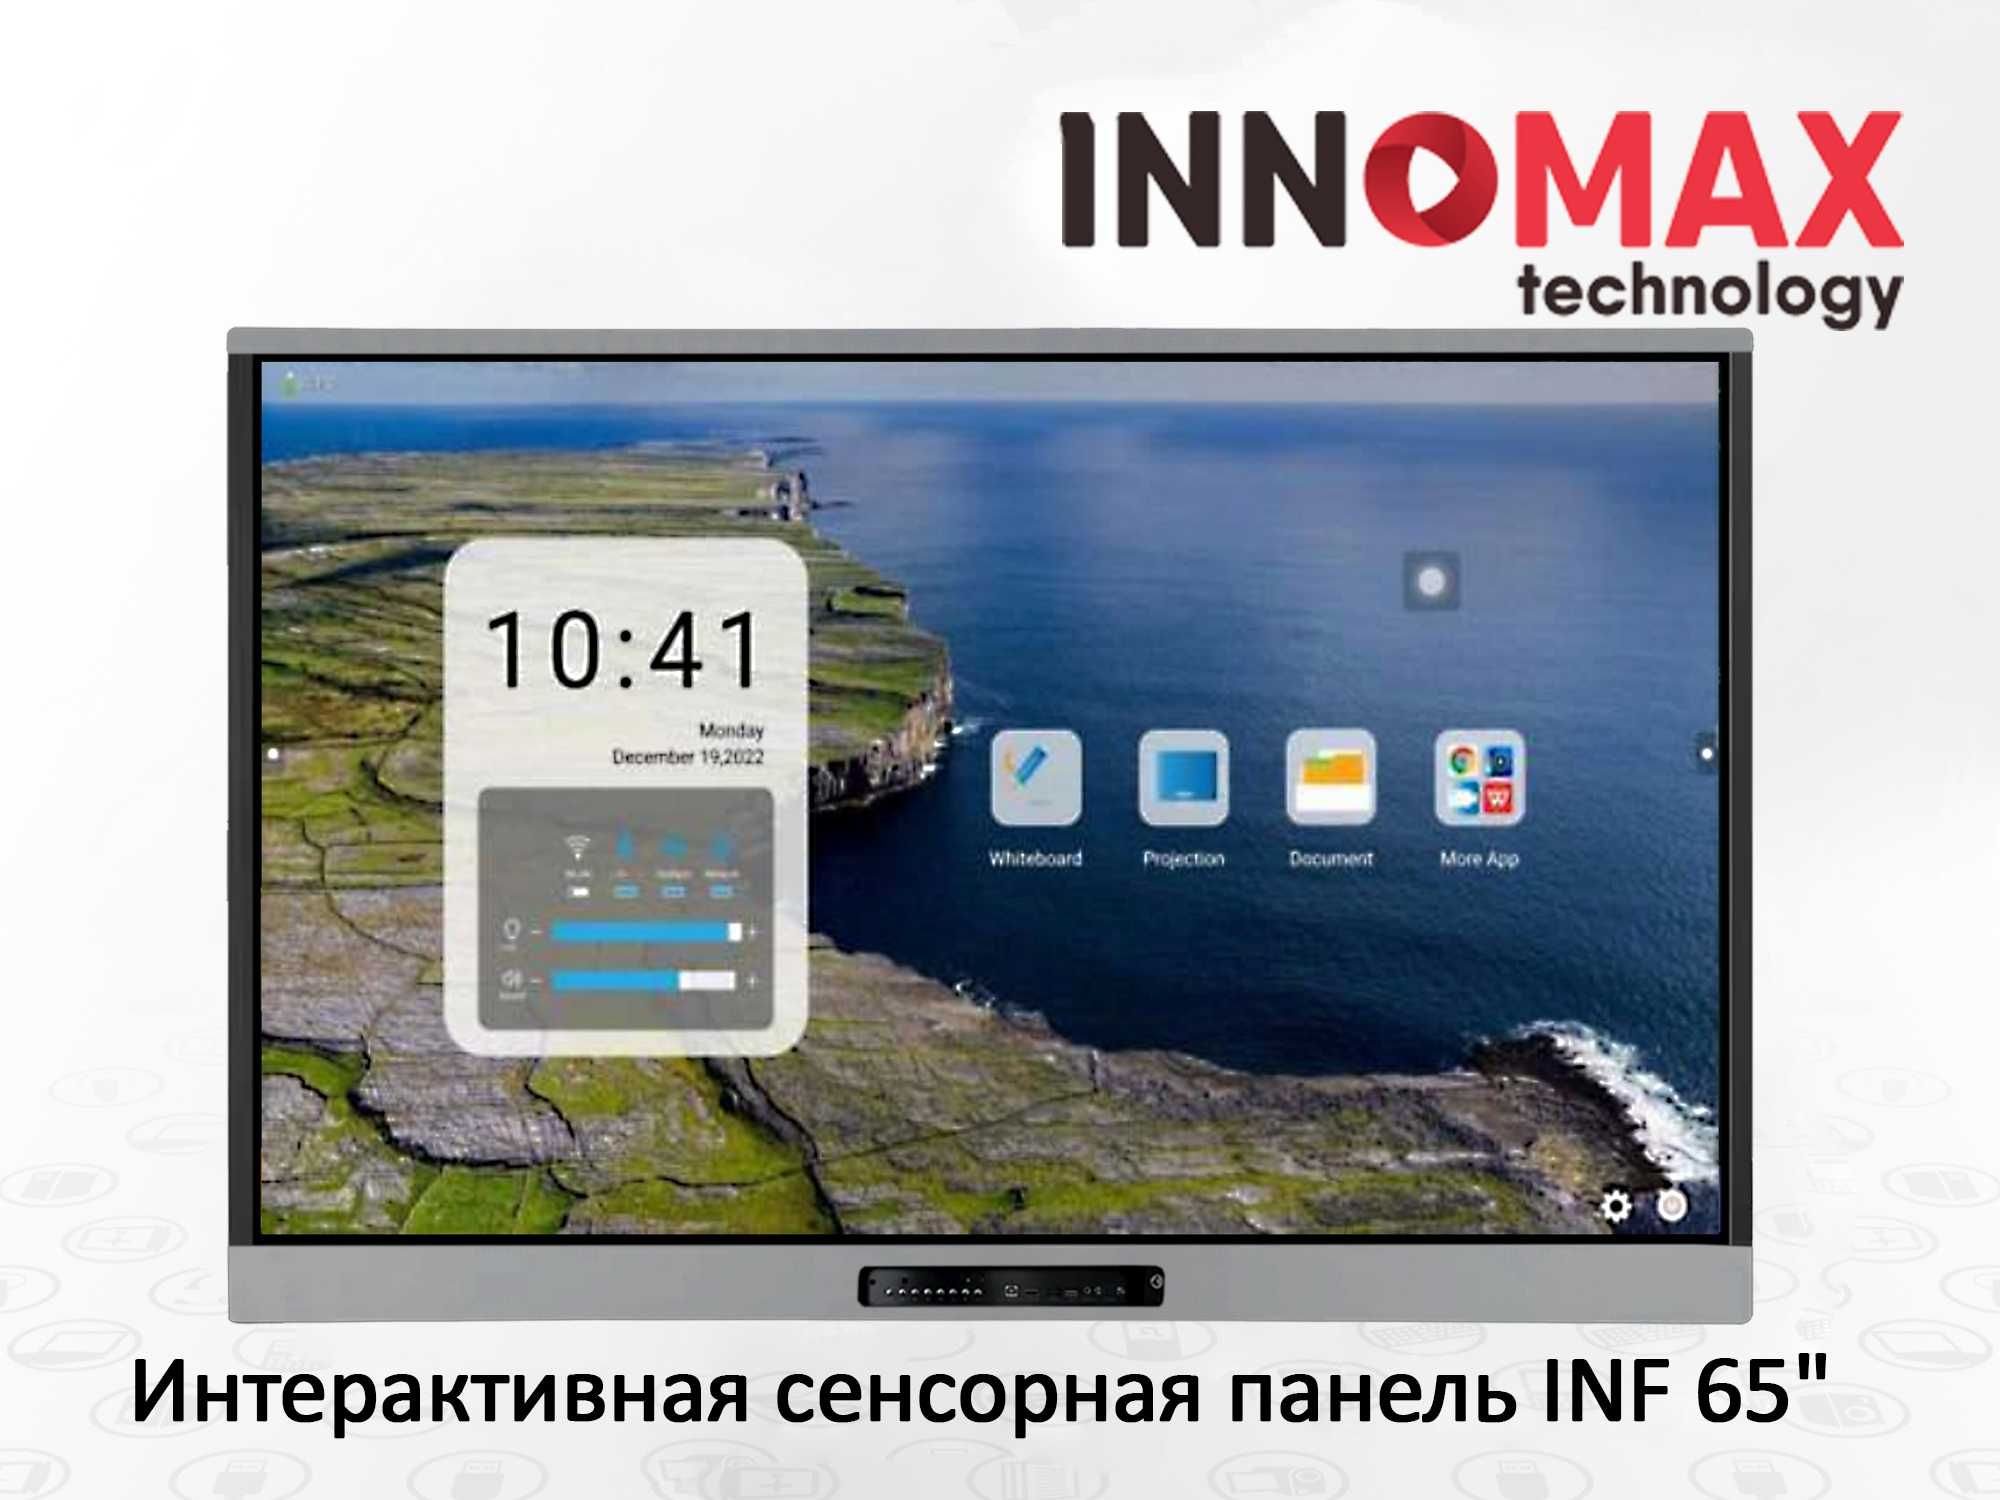 Интерактивная сенсорная панель INF-65"/Batafsil malumot: innomax.uz